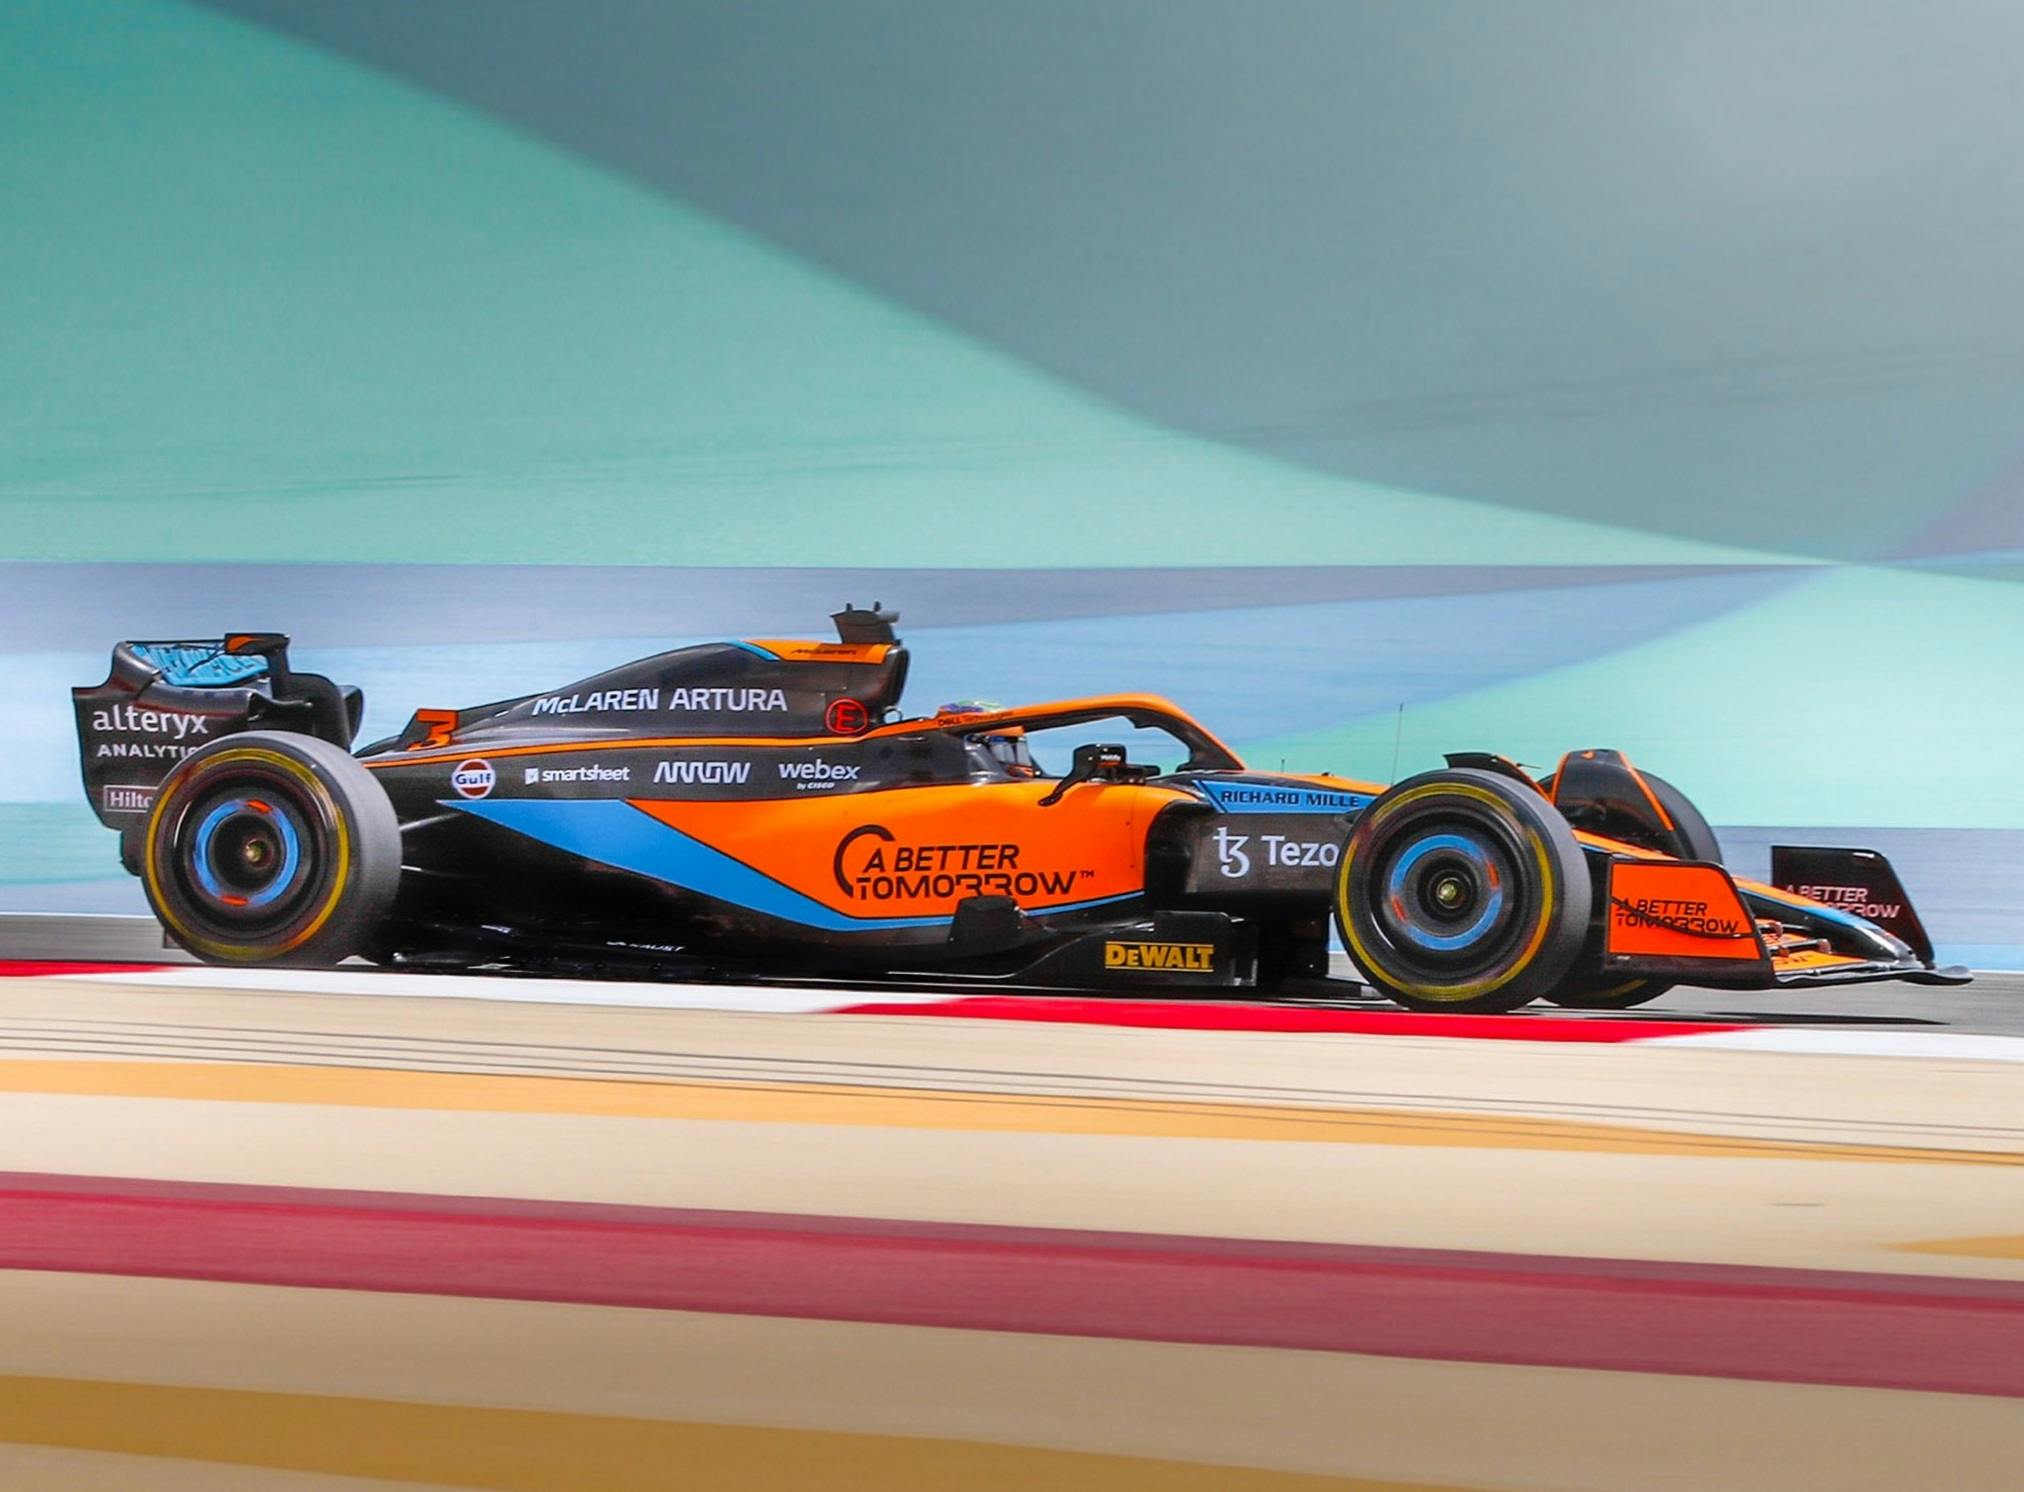 Problemy z hamulcami utrudniają McLarenowi  testy   